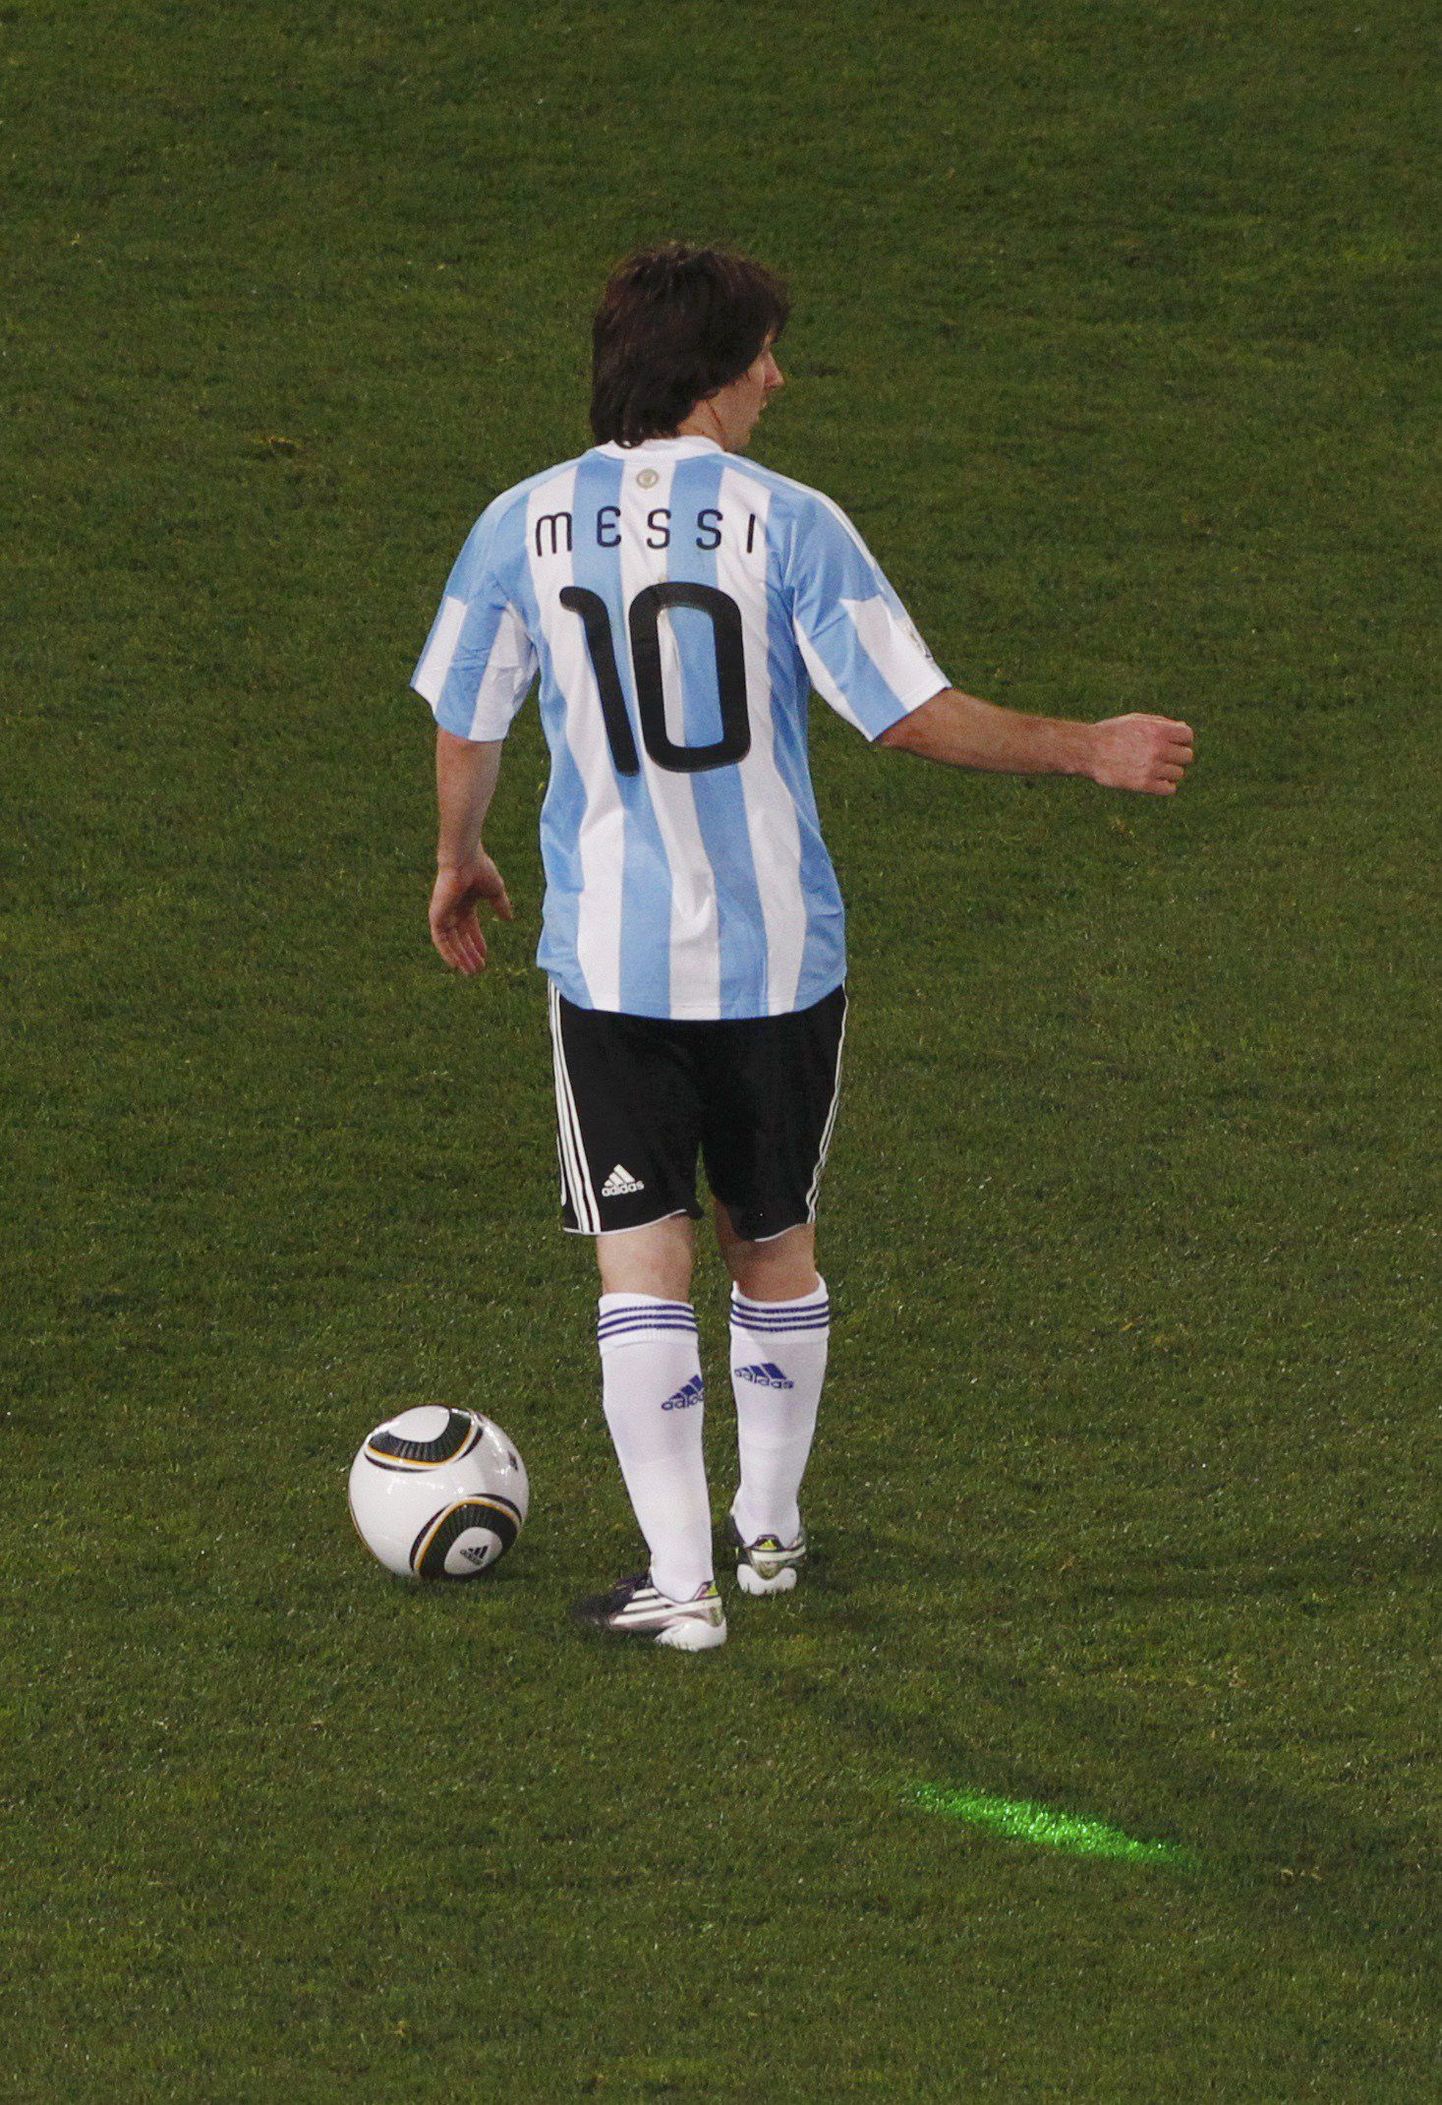 See pildil nähaolev erkroheline kiir Lionel Messi juures ongi laserkiir.